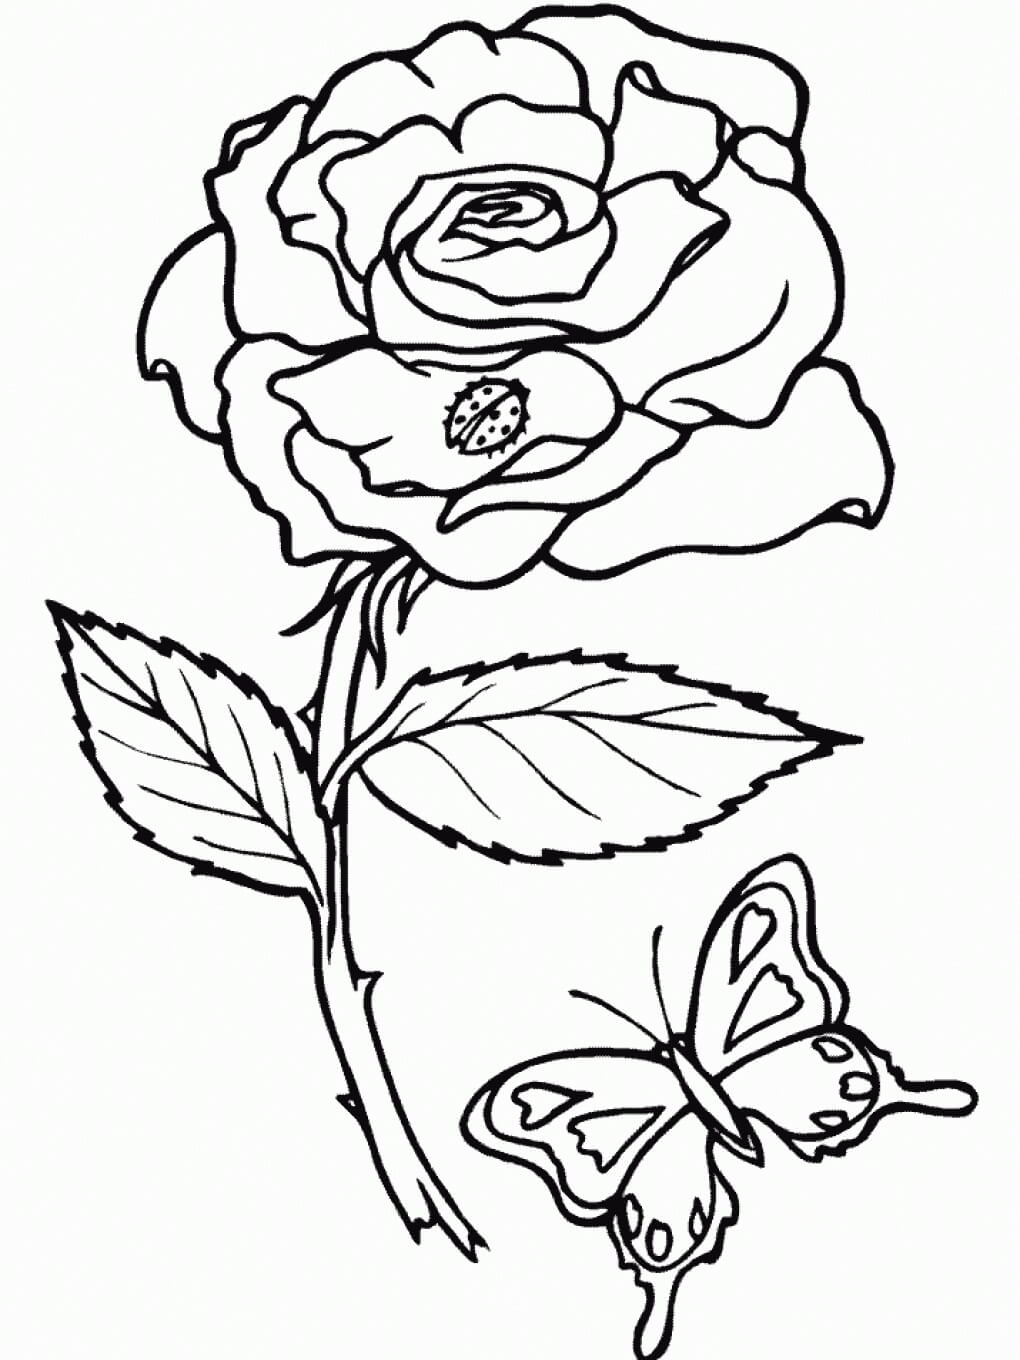 Rose et Papillon coloring page